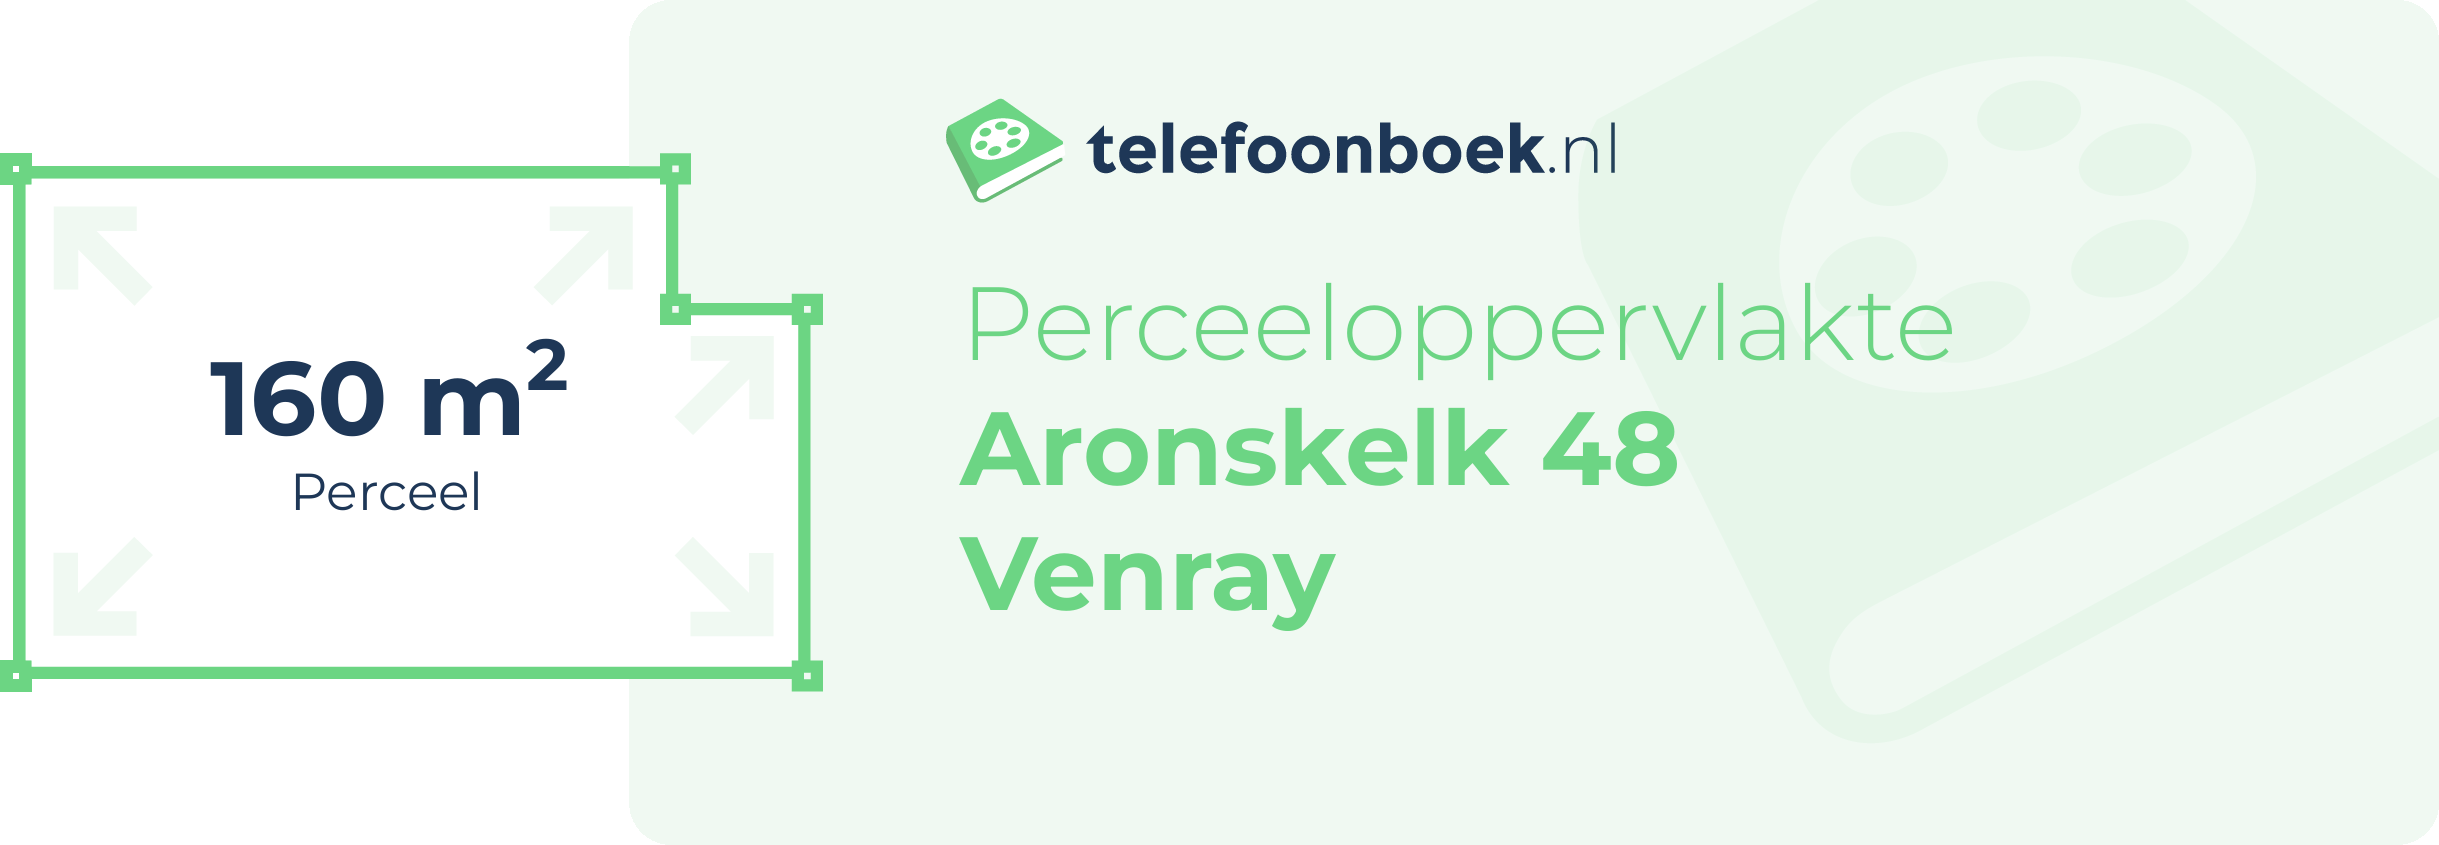 Perceeloppervlakte Aronskelk 48 Venray